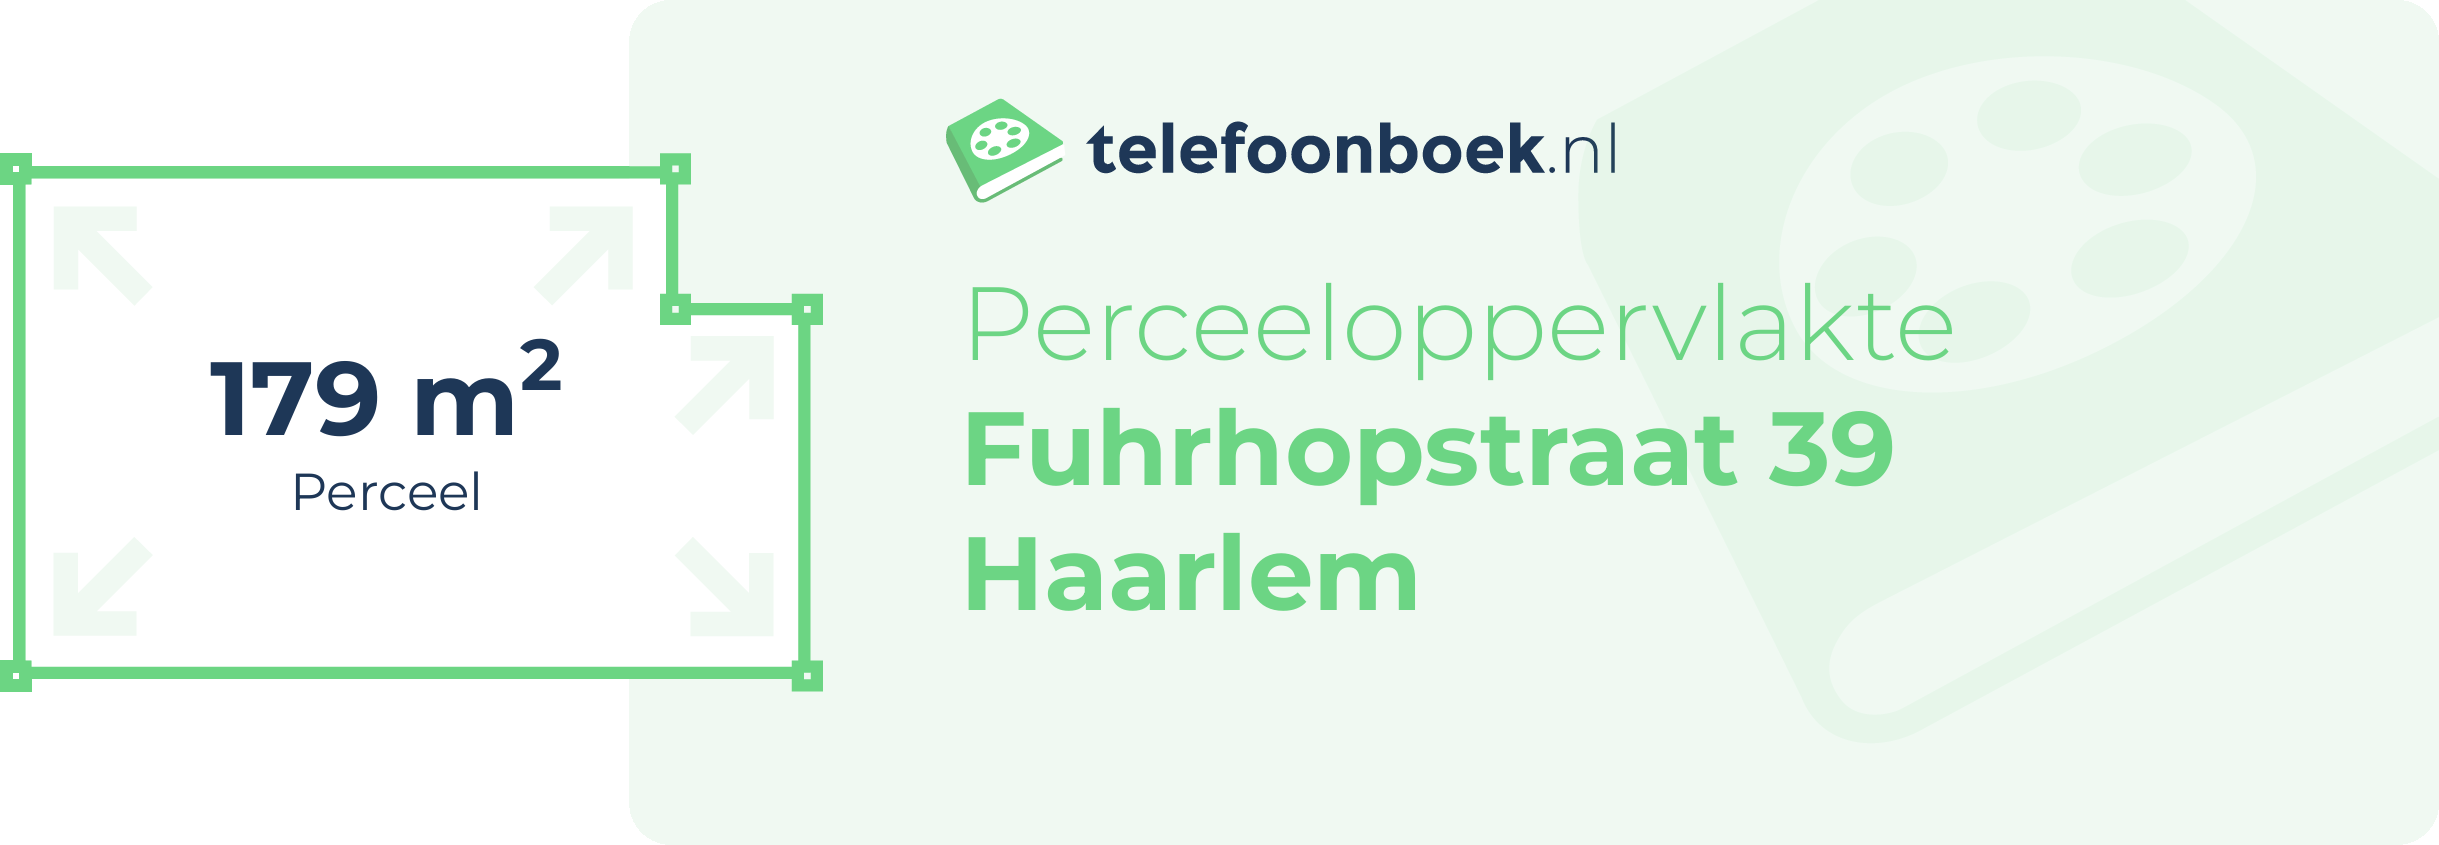 Perceeloppervlakte Fuhrhopstraat 39 Haarlem